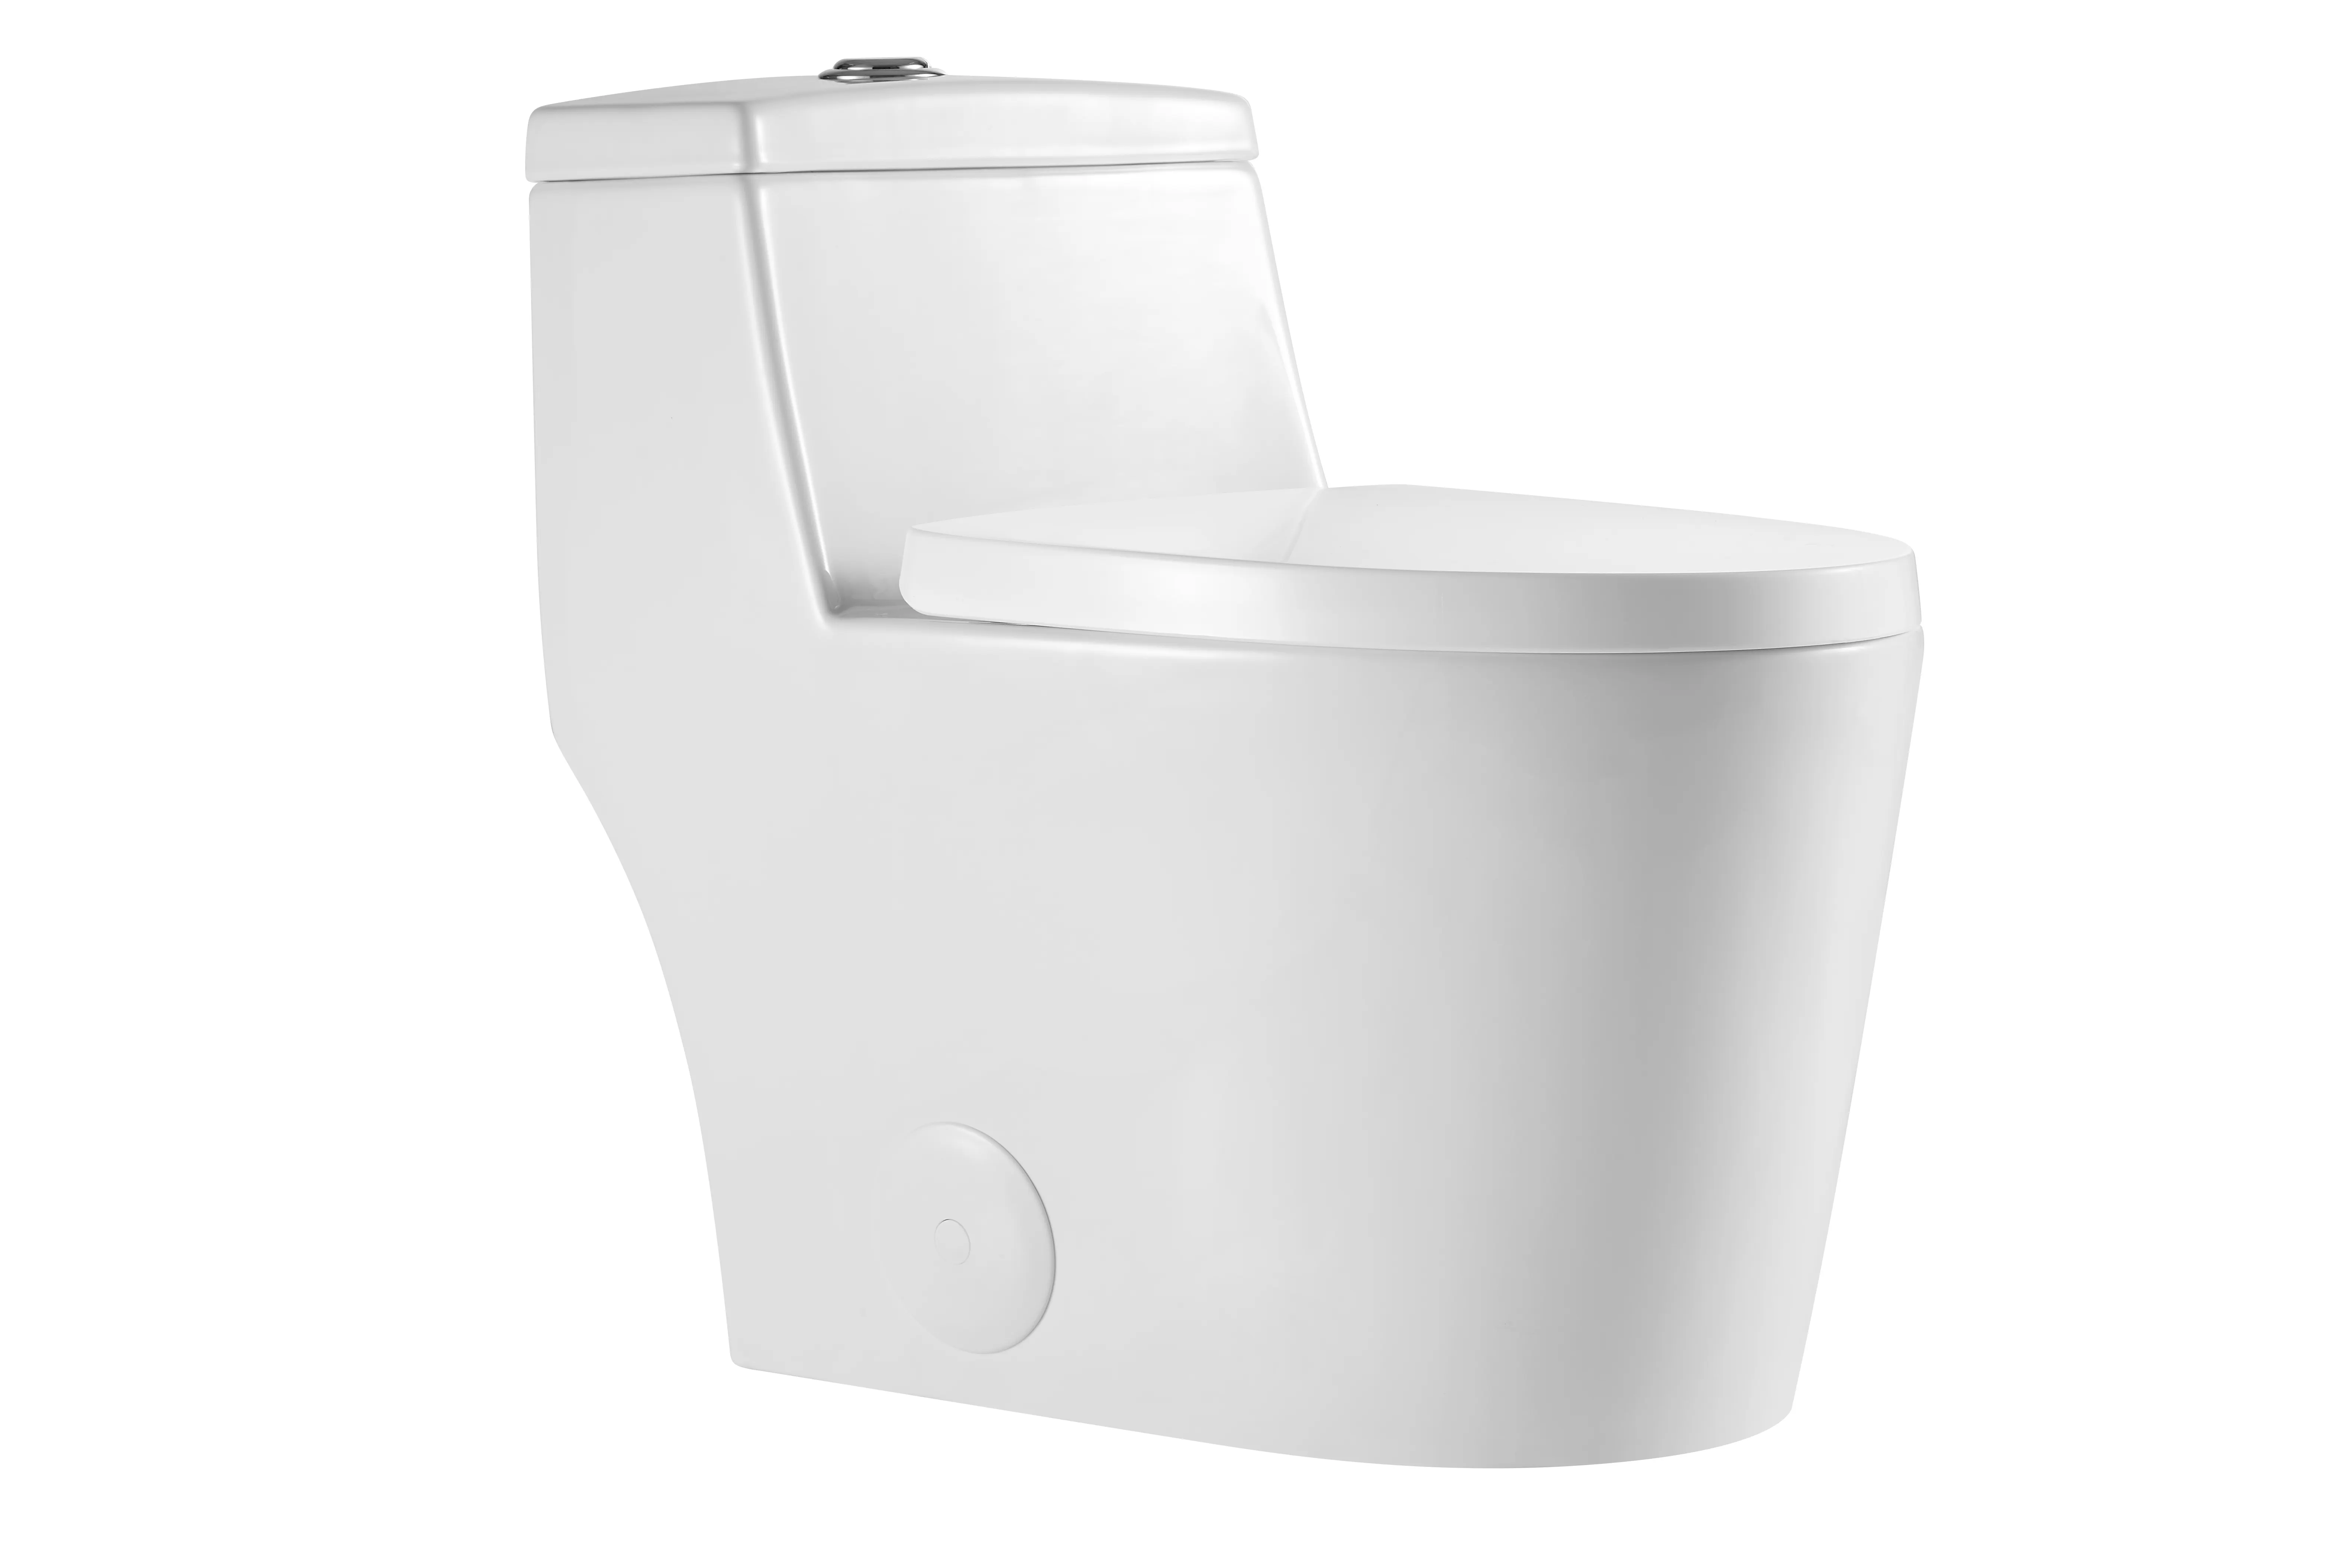 Yeni tasarım beyaz seramik üst presleme için iki uç tipi tek parça tuvalet banyo